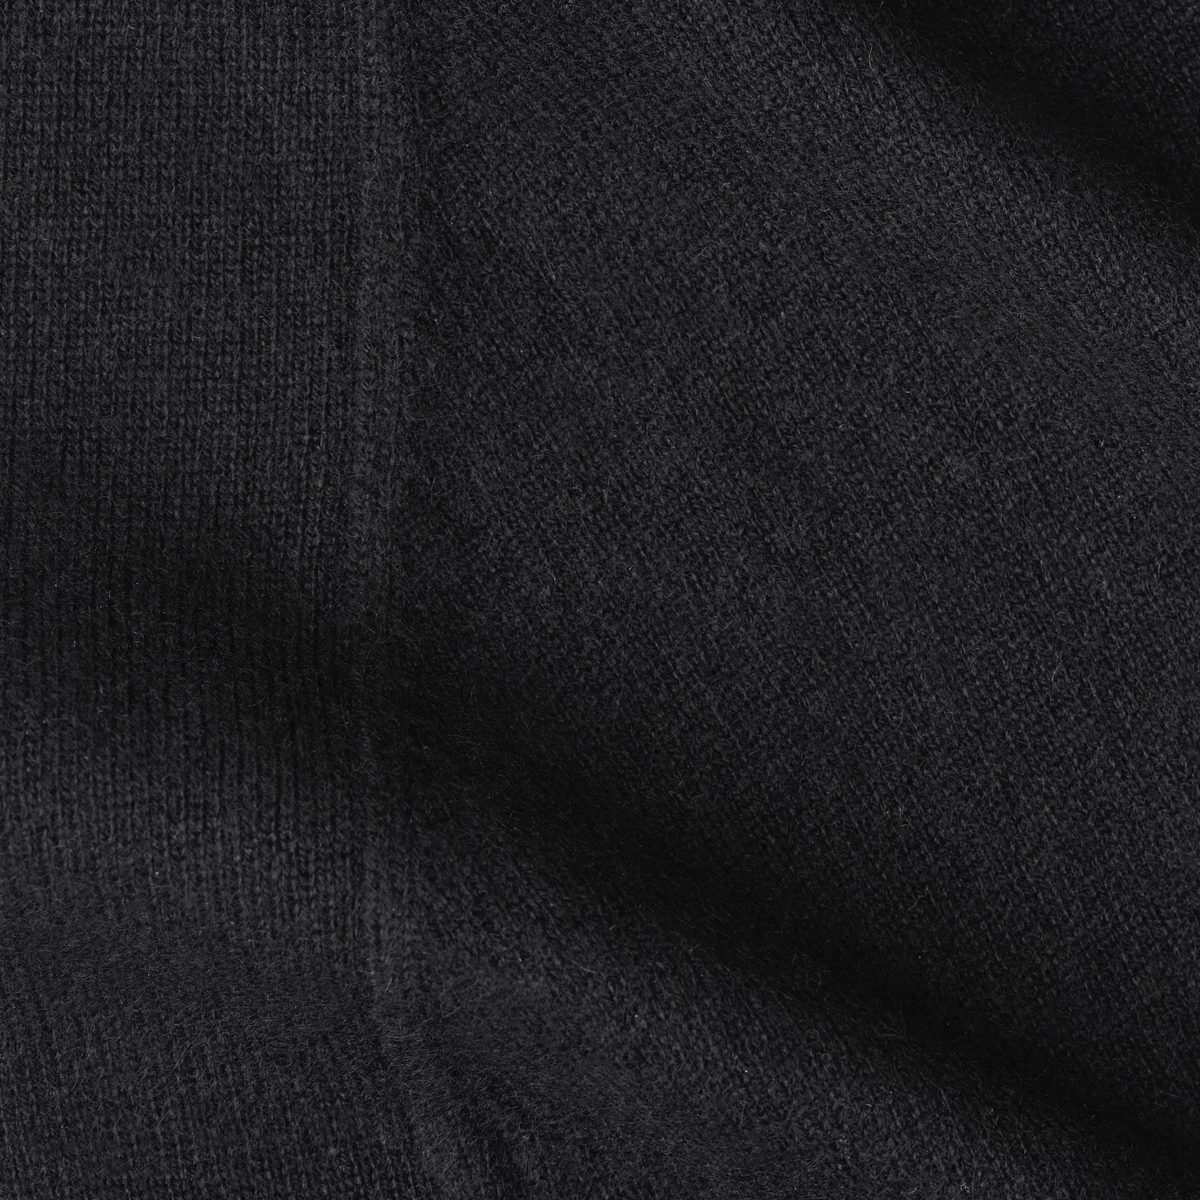 Fabric Closeup of Sferra Donna Cashmere Robe in Black Color